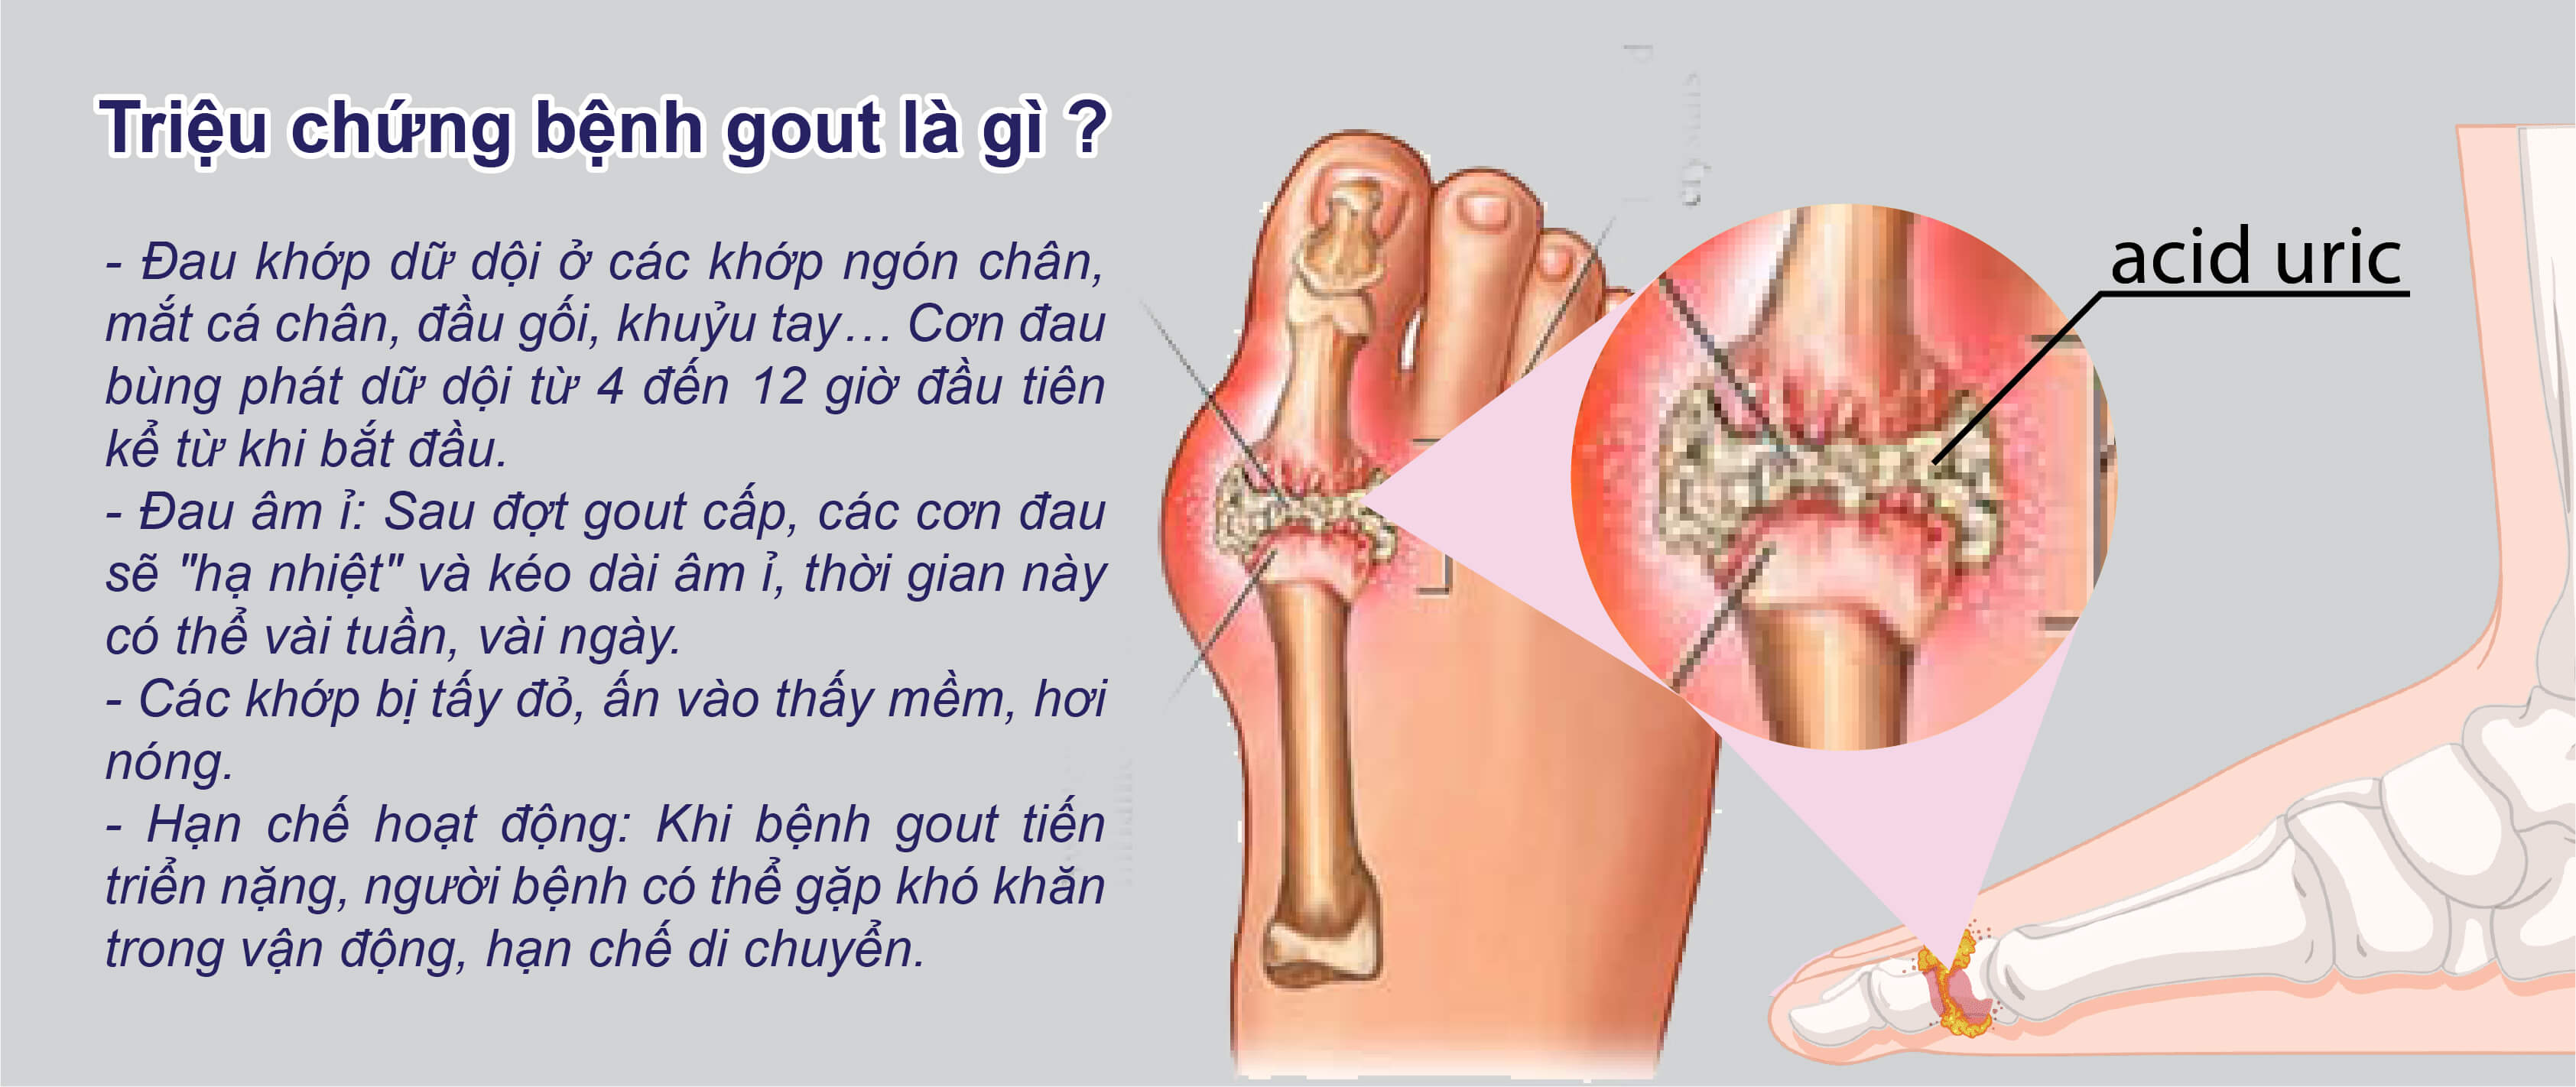 Triệu chứng bệnh gout là gì